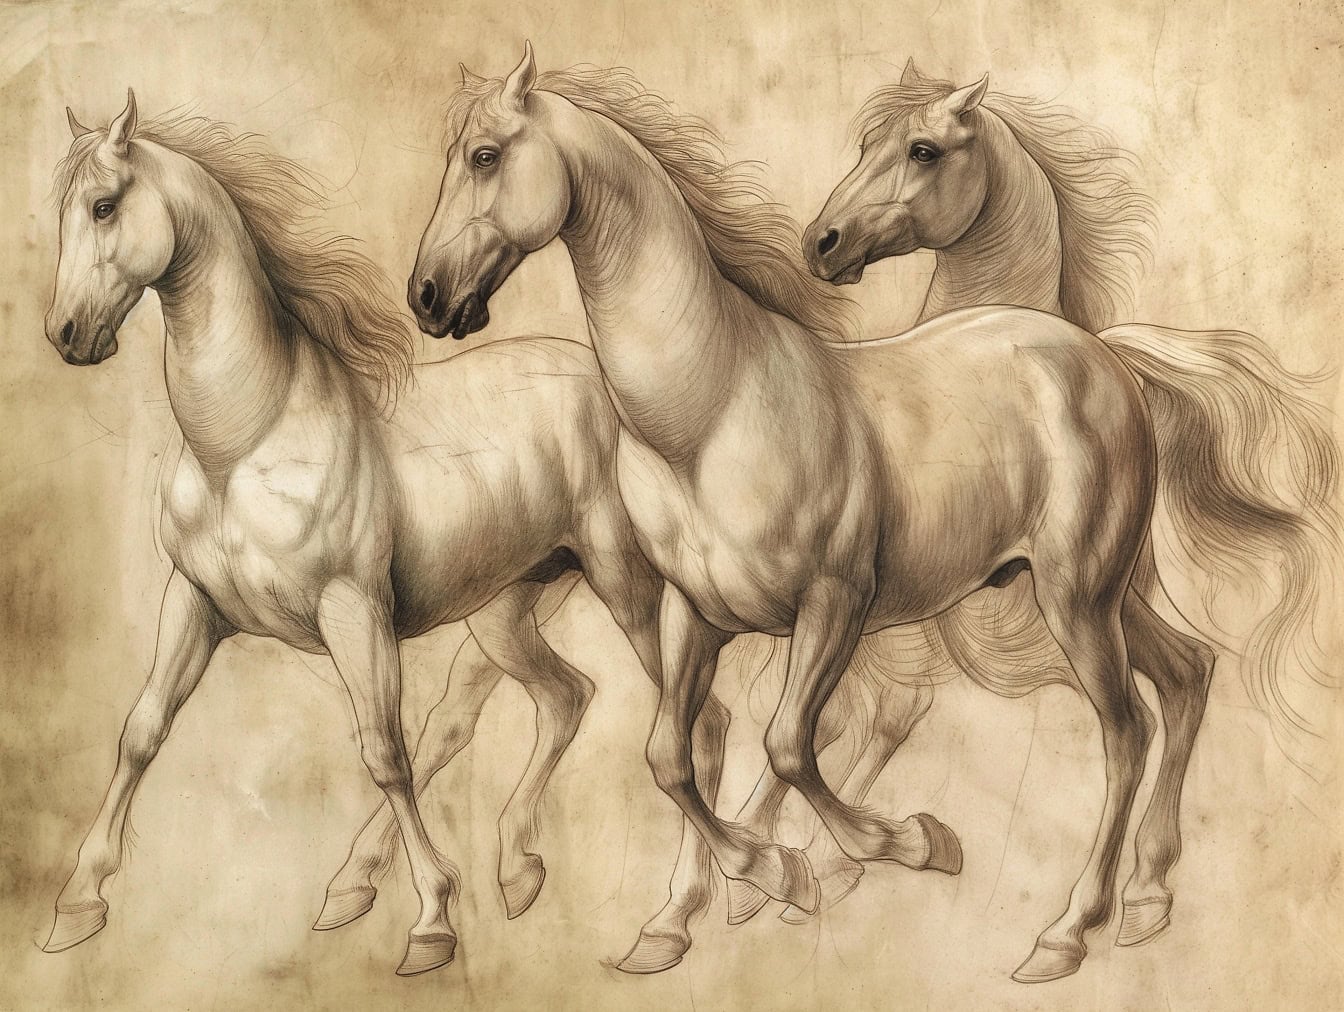 Håndtegning af tre heste med en lang manke i galop, en skitse på gammelt falmet gulligt papir